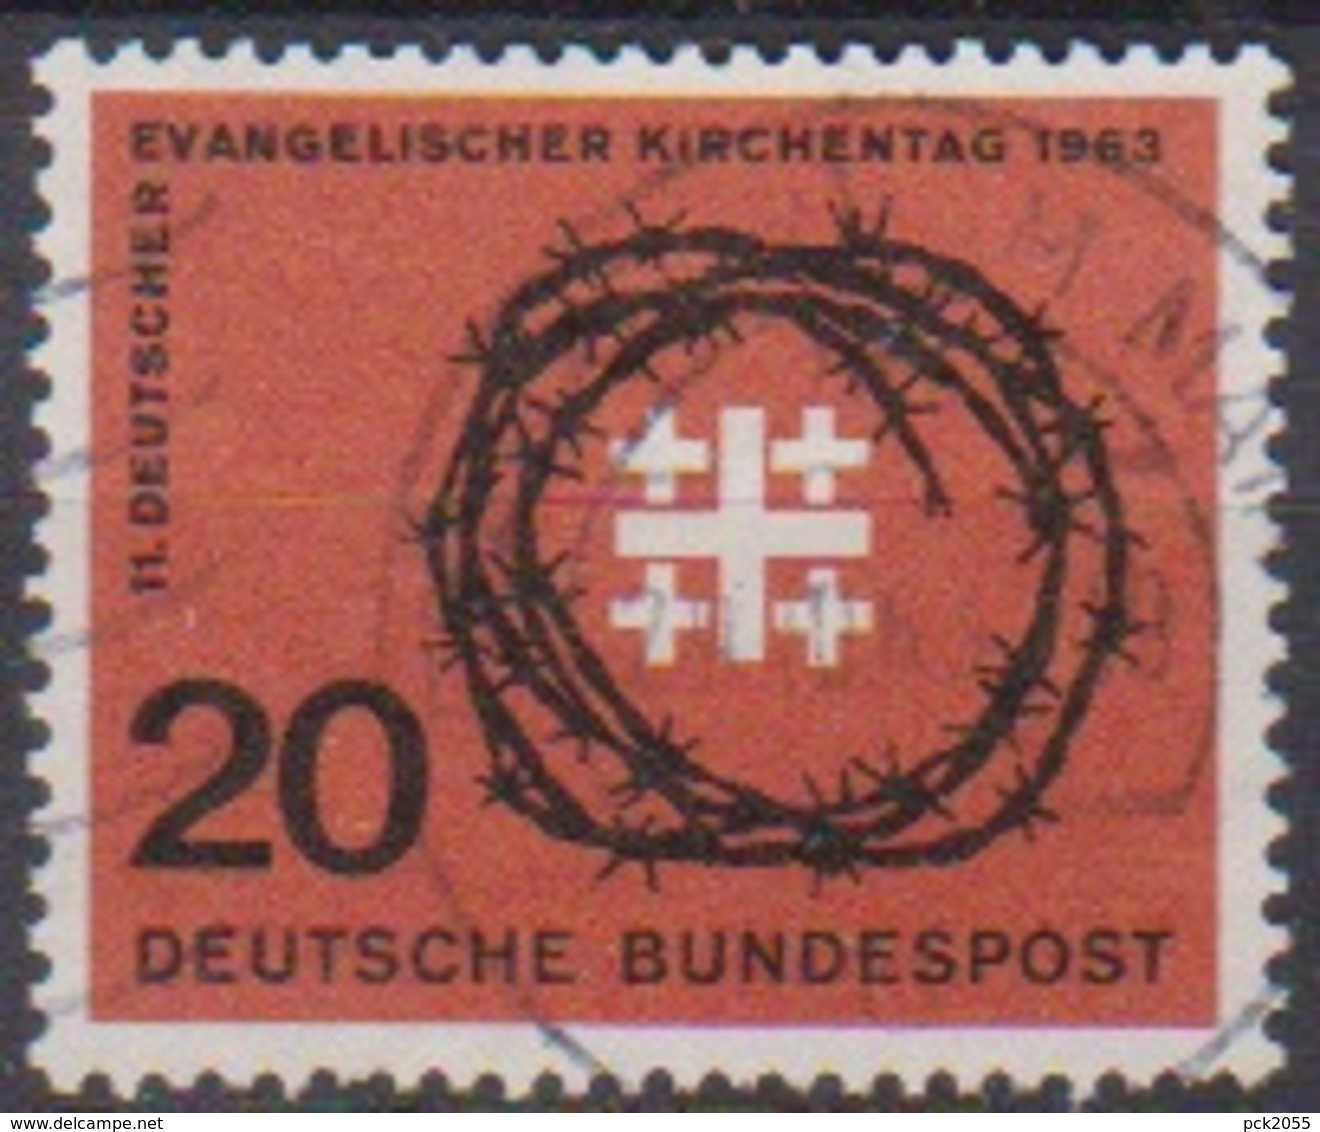 BRD 1963 MiNr.405 Deutscher Evangelischer Kirchentag ( A686 ) Günstige Versandkosten - Gebraucht